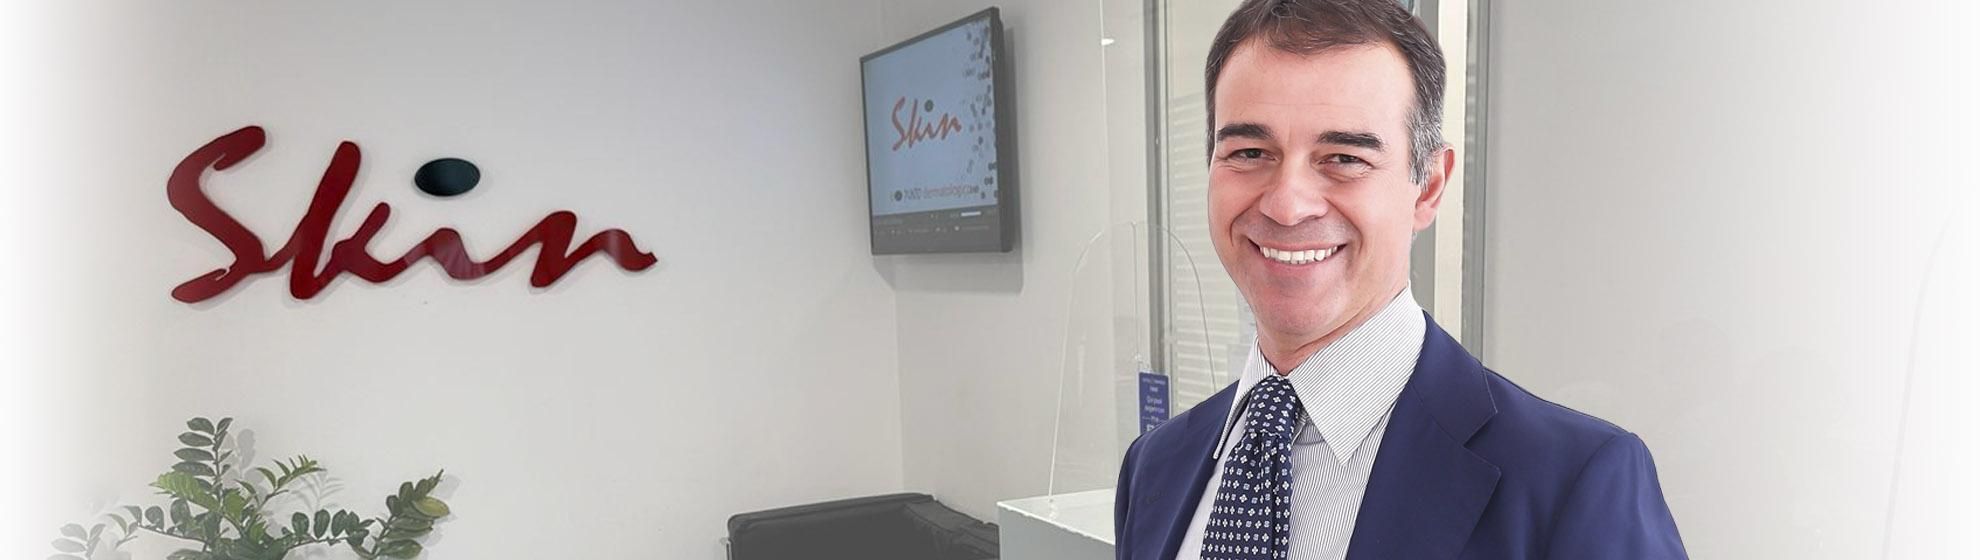 Dr. Stefano Chiummariello, Specialista in Chirurgia Plastica e Estetica